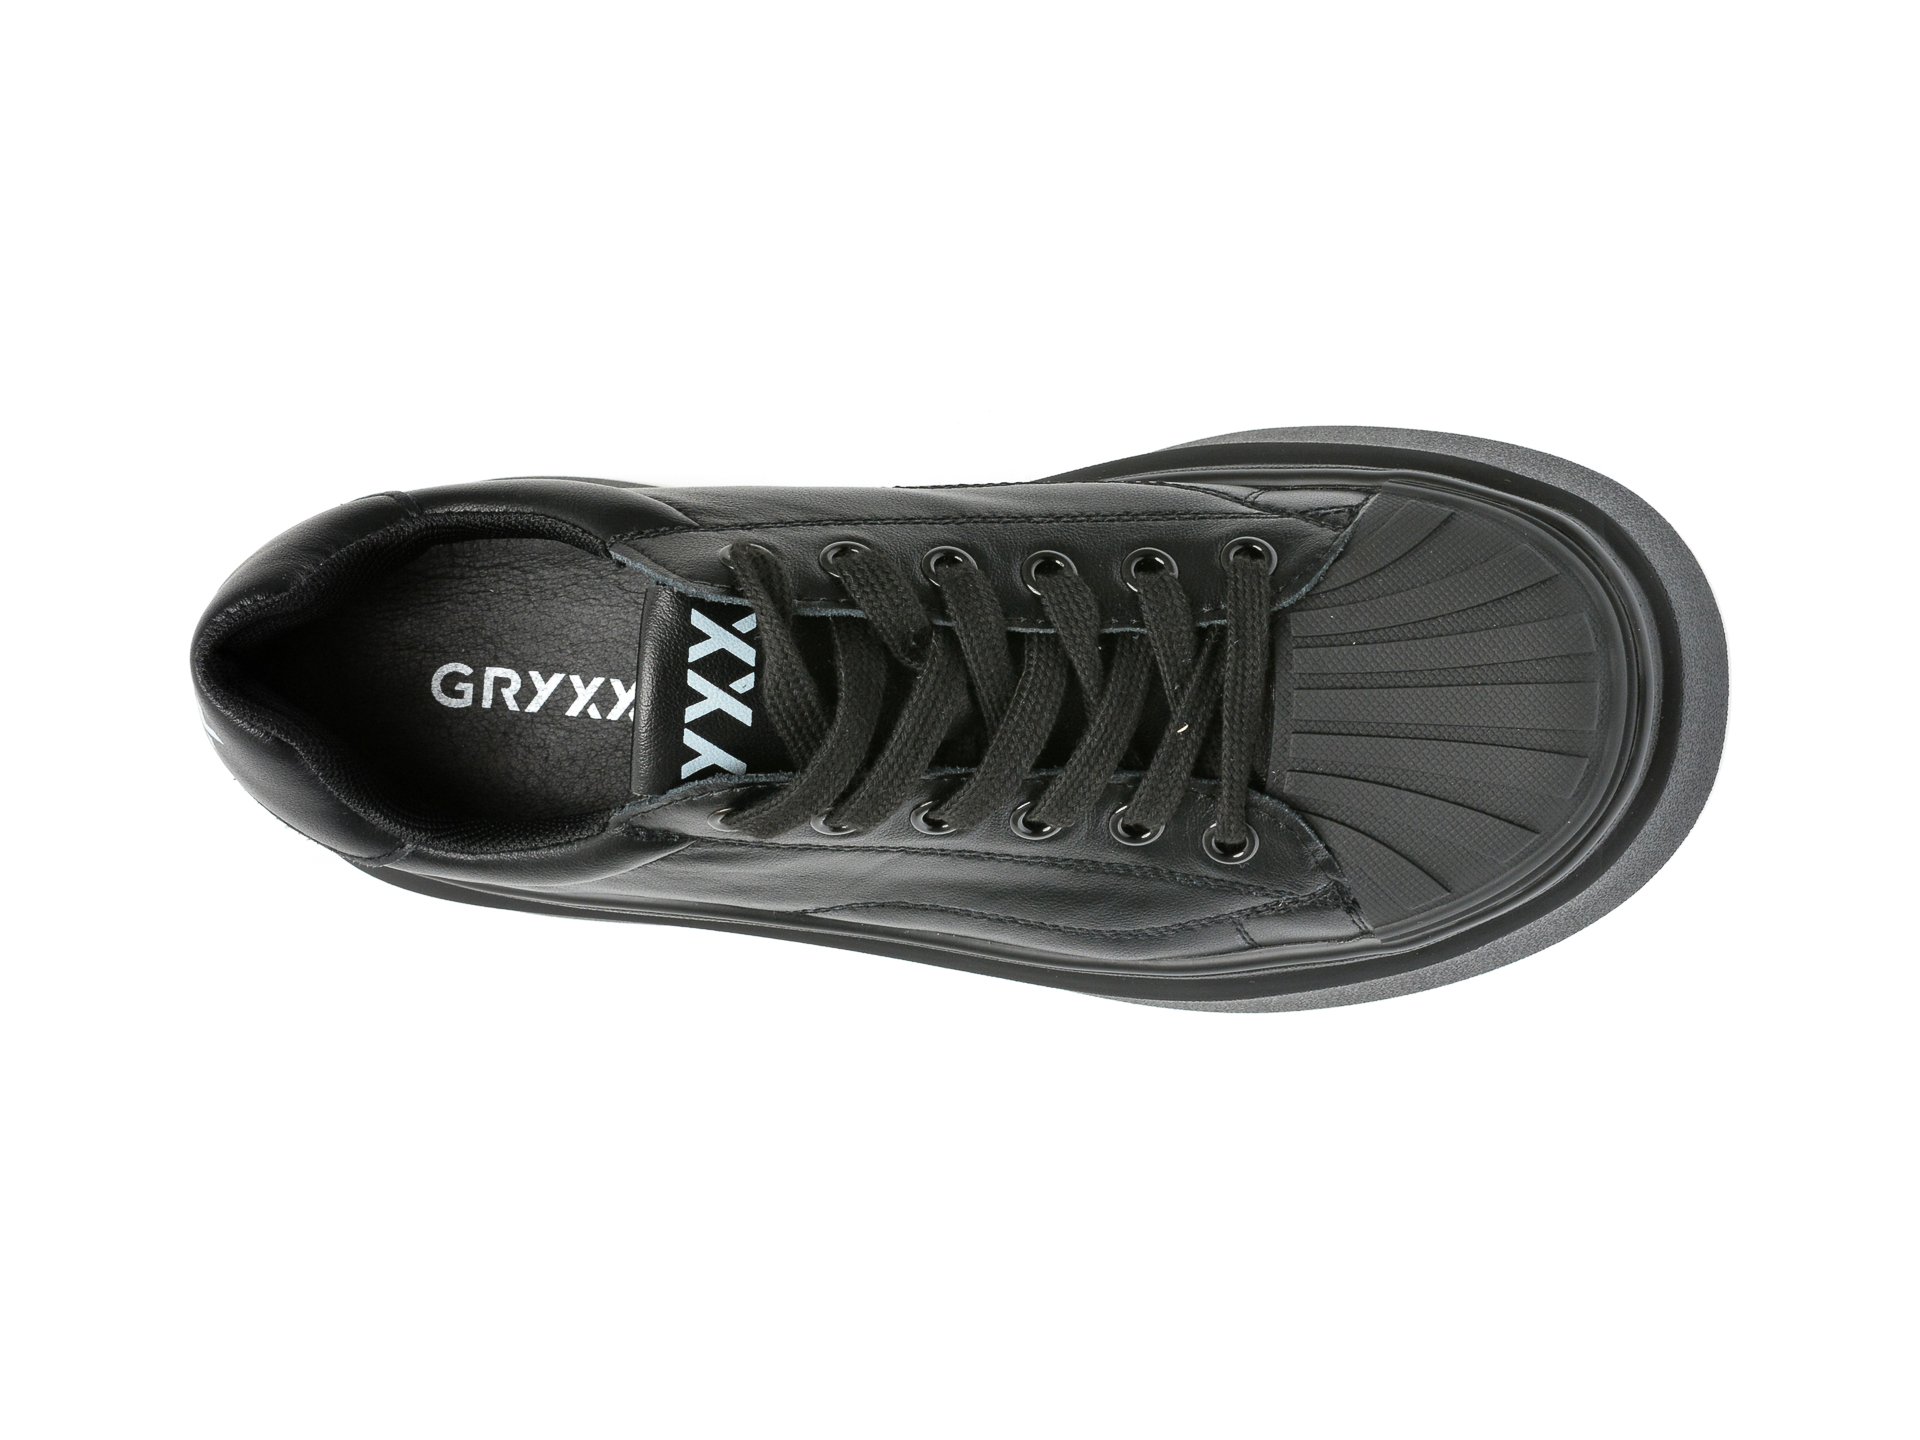 Poze Pantofi GRYXX negri, 856, din piele naturala otter.ro